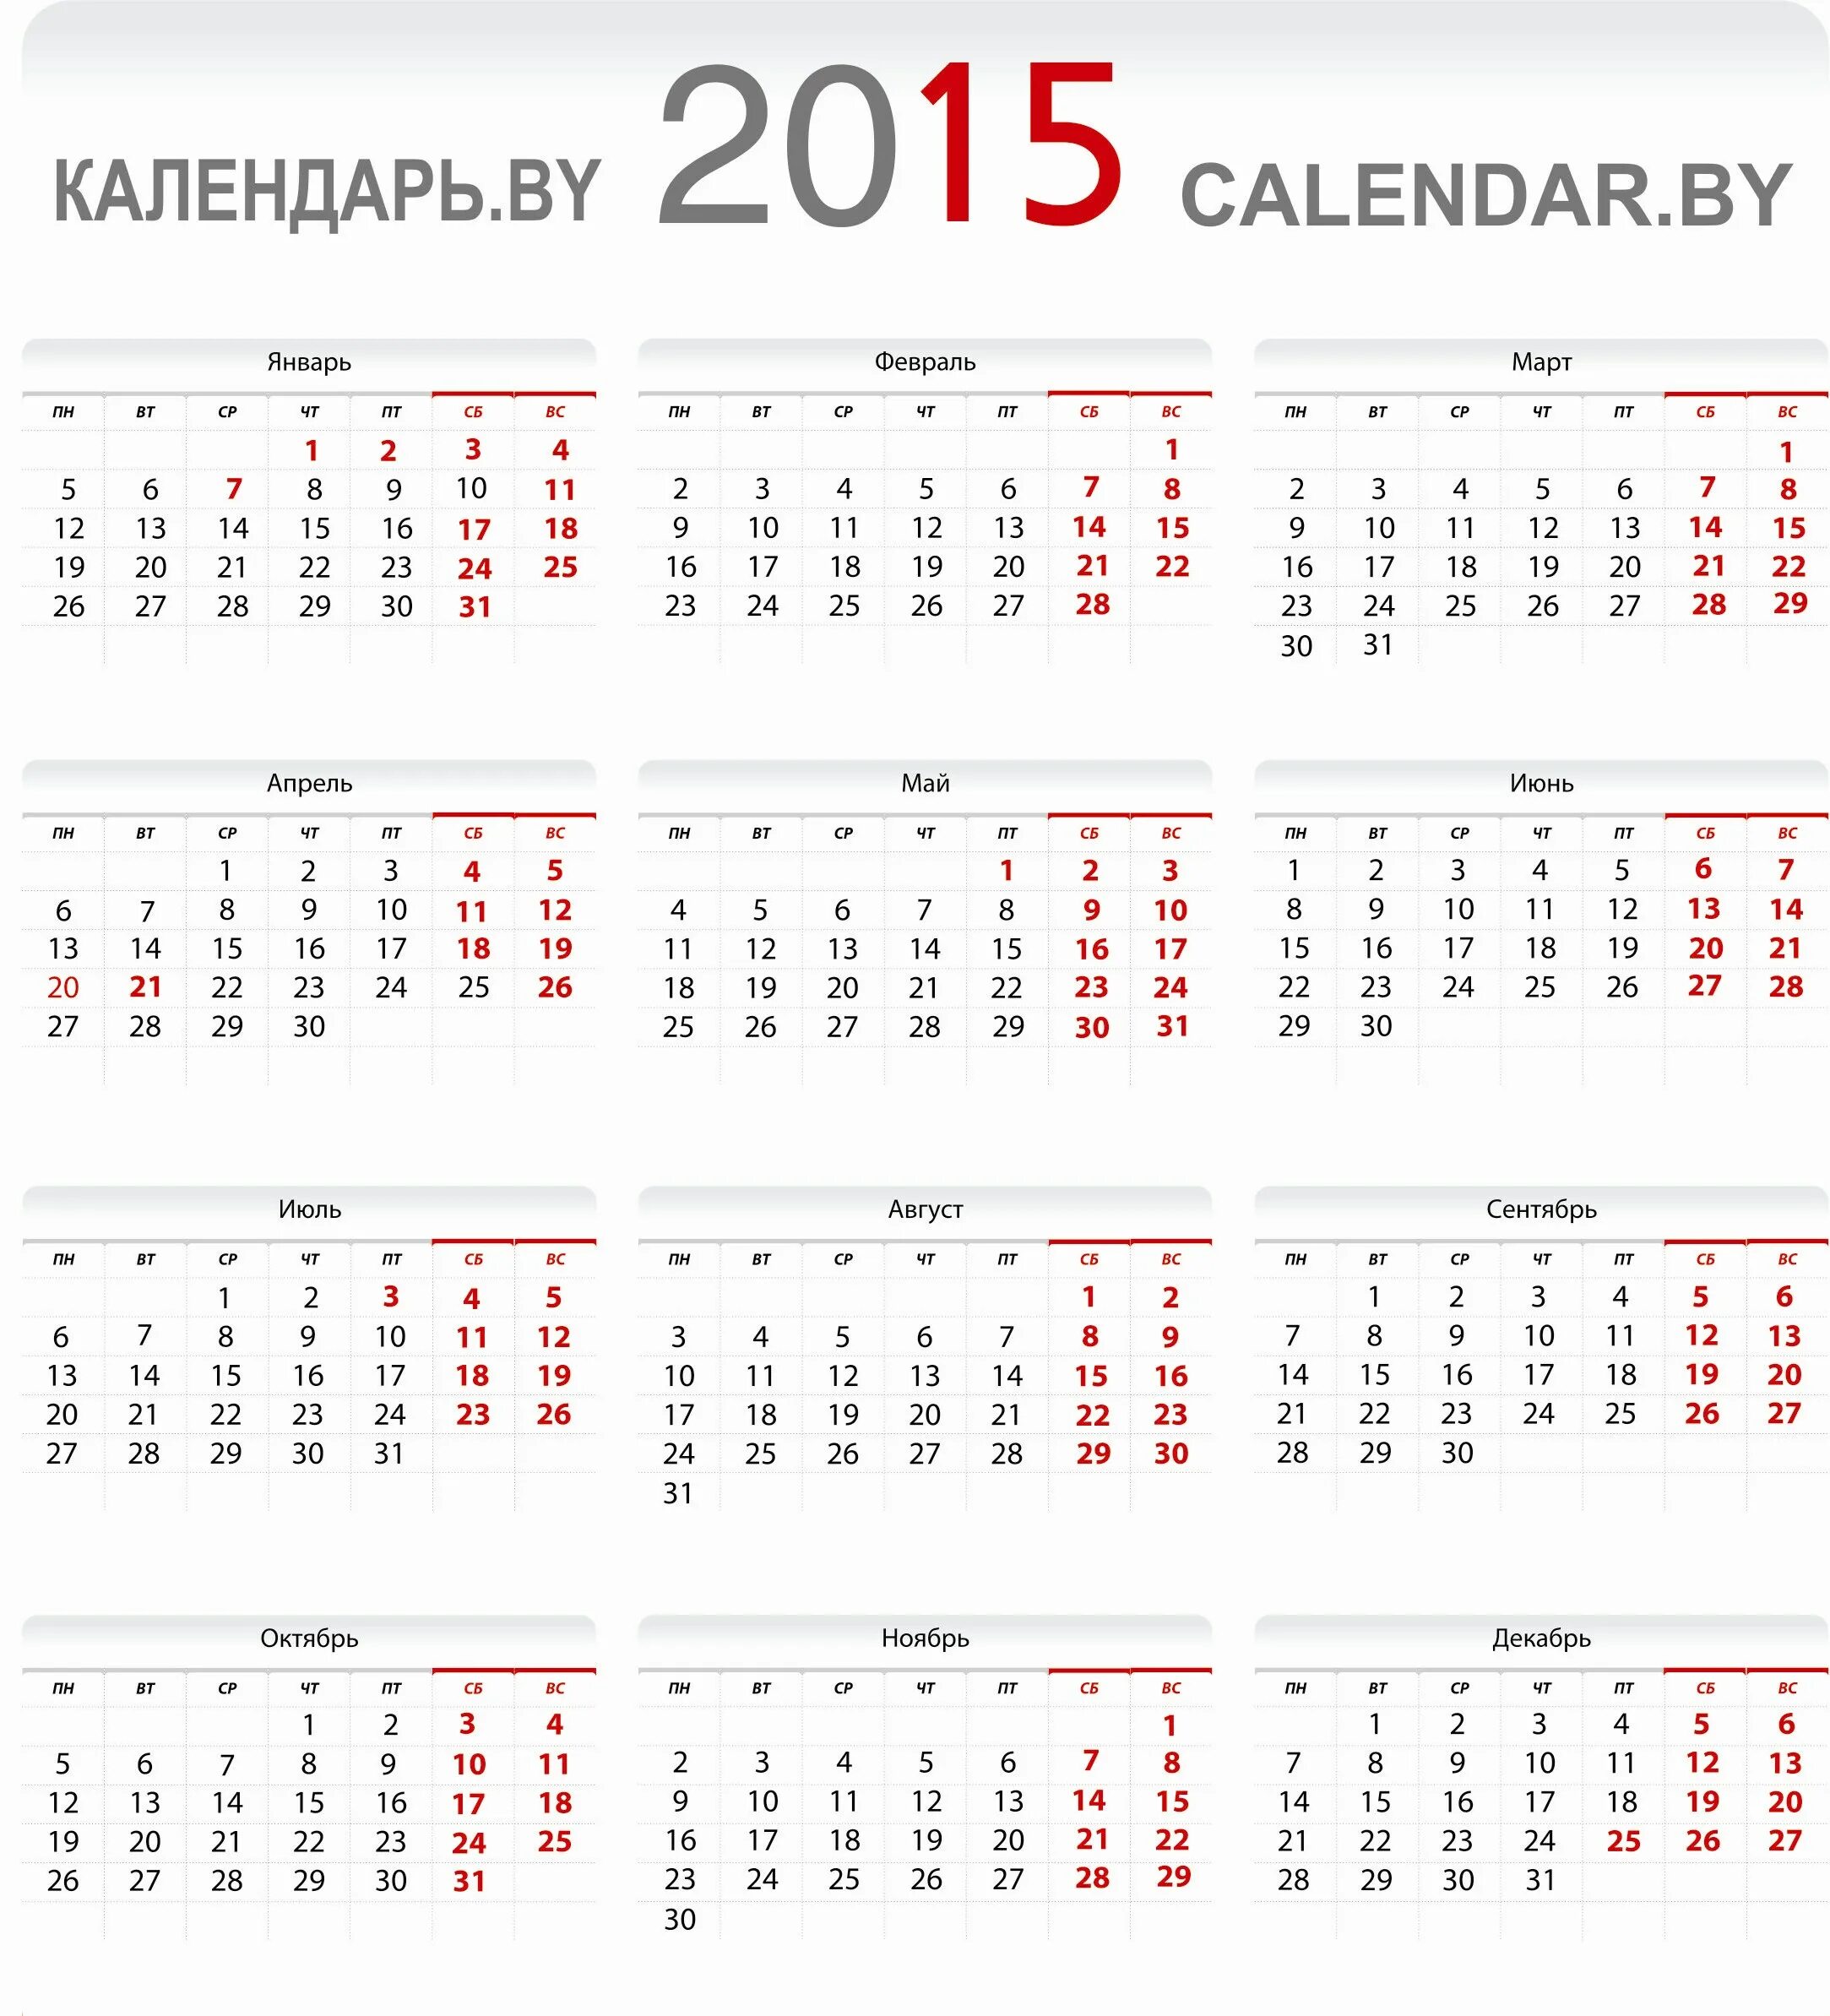 Календарь 2015. Календарь на 2015 год. Календарь 2015г. Календарь 2015 года по месяцам. 2014 год 2015 год количество